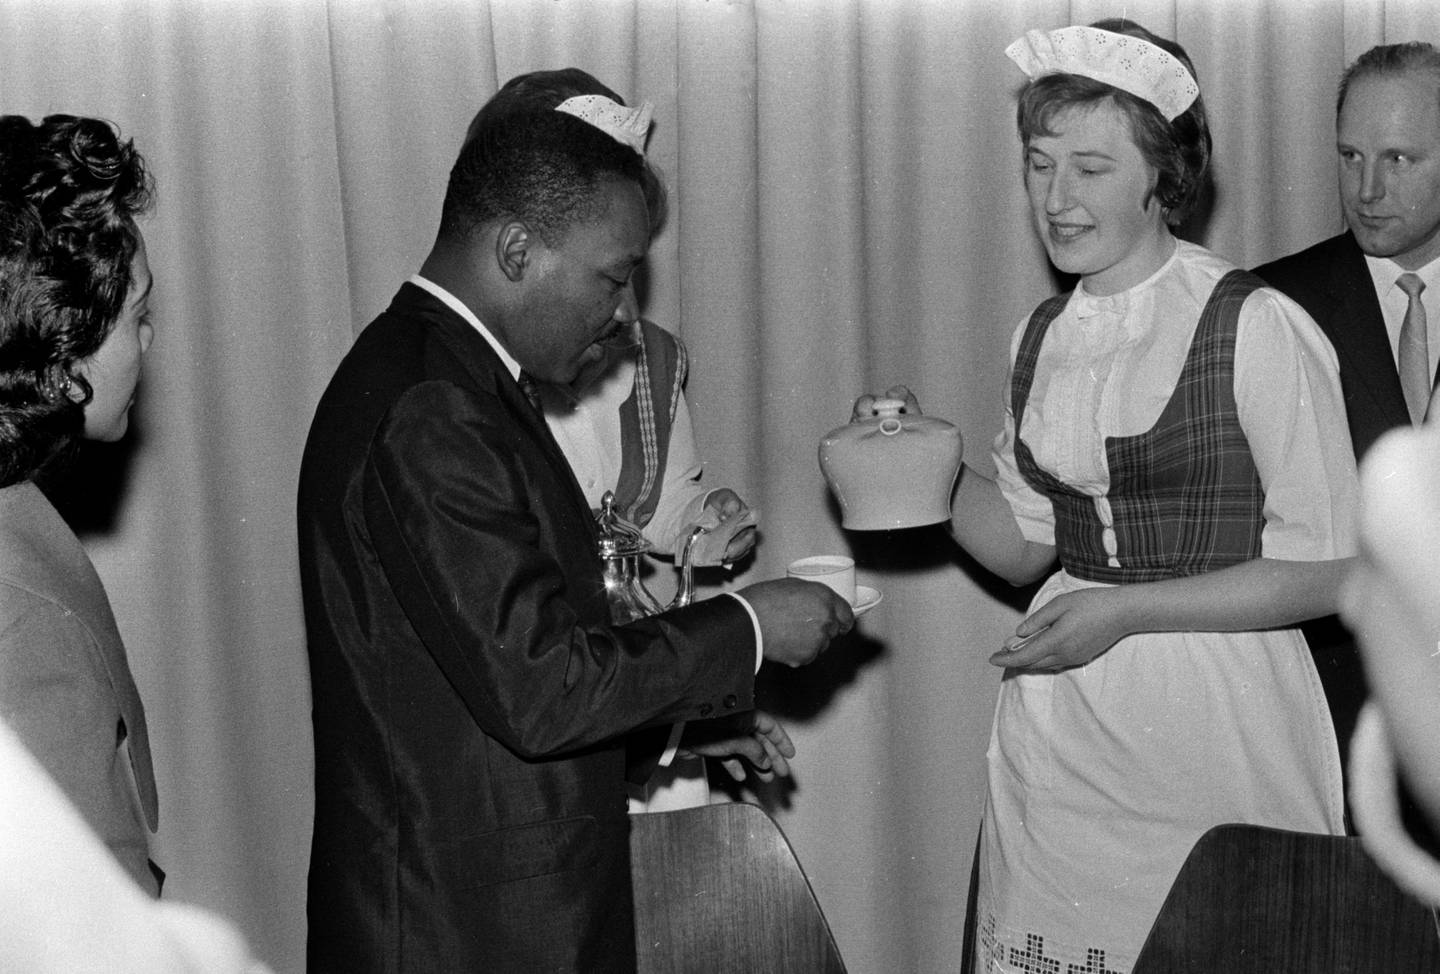 King får te av dame i bunad: Martin Luther King var selv tidligere baptistprest, og ble mottatt med varme og te i en baptistmenighet i Oslo. Foto: Arbeiderbevegelsens arkiv